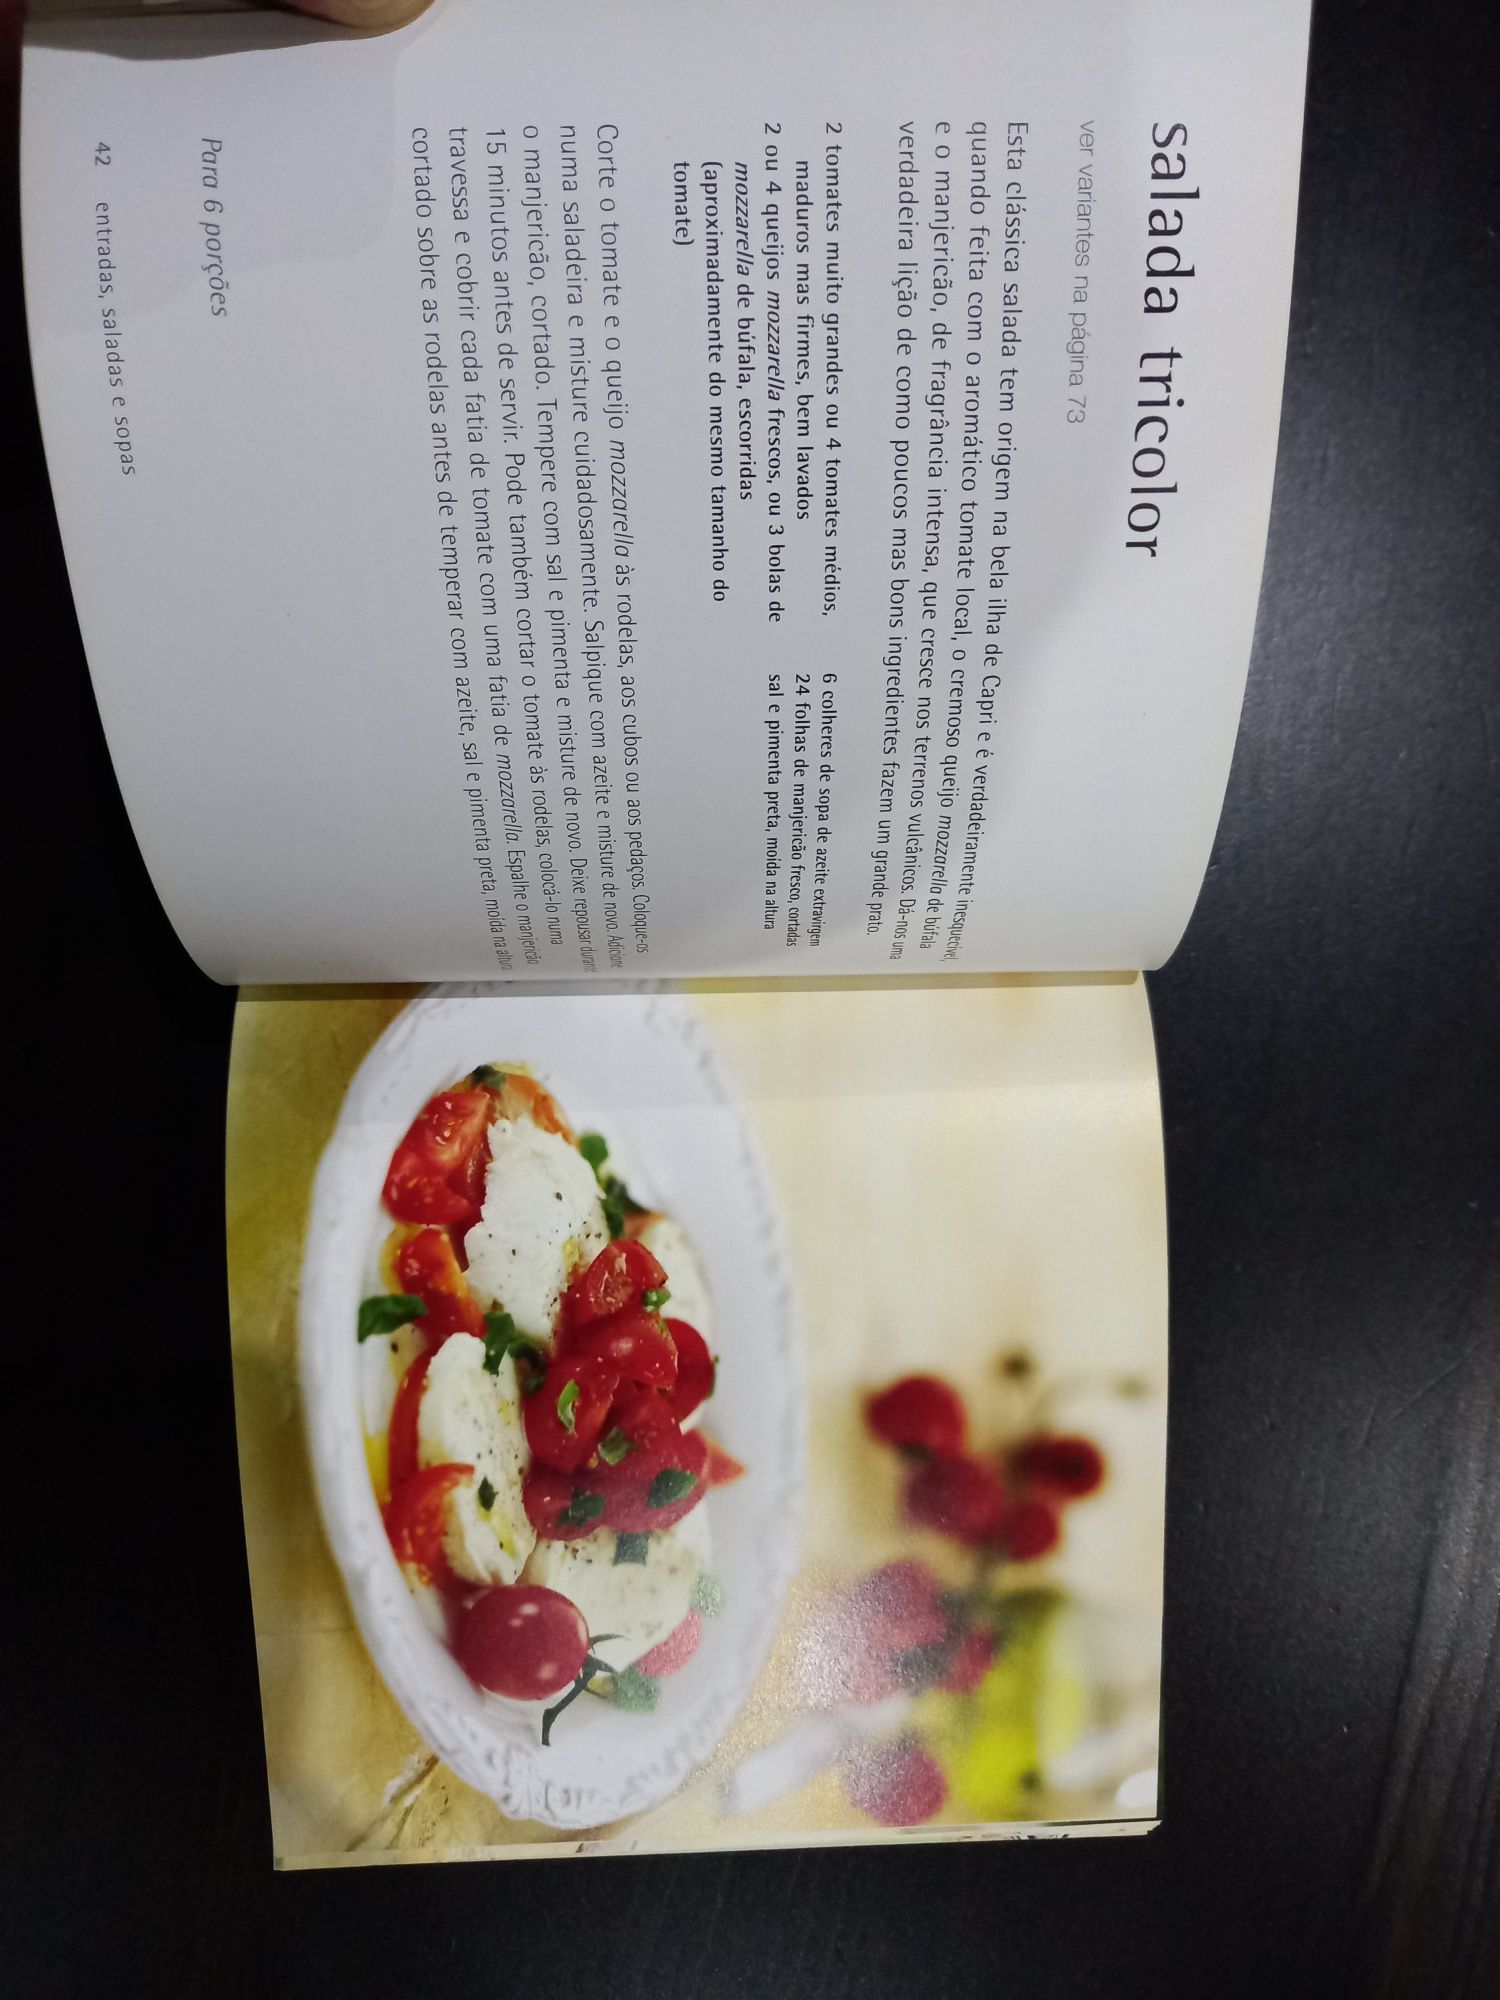 Livro "500 Pratos Italianos" - Como Novo